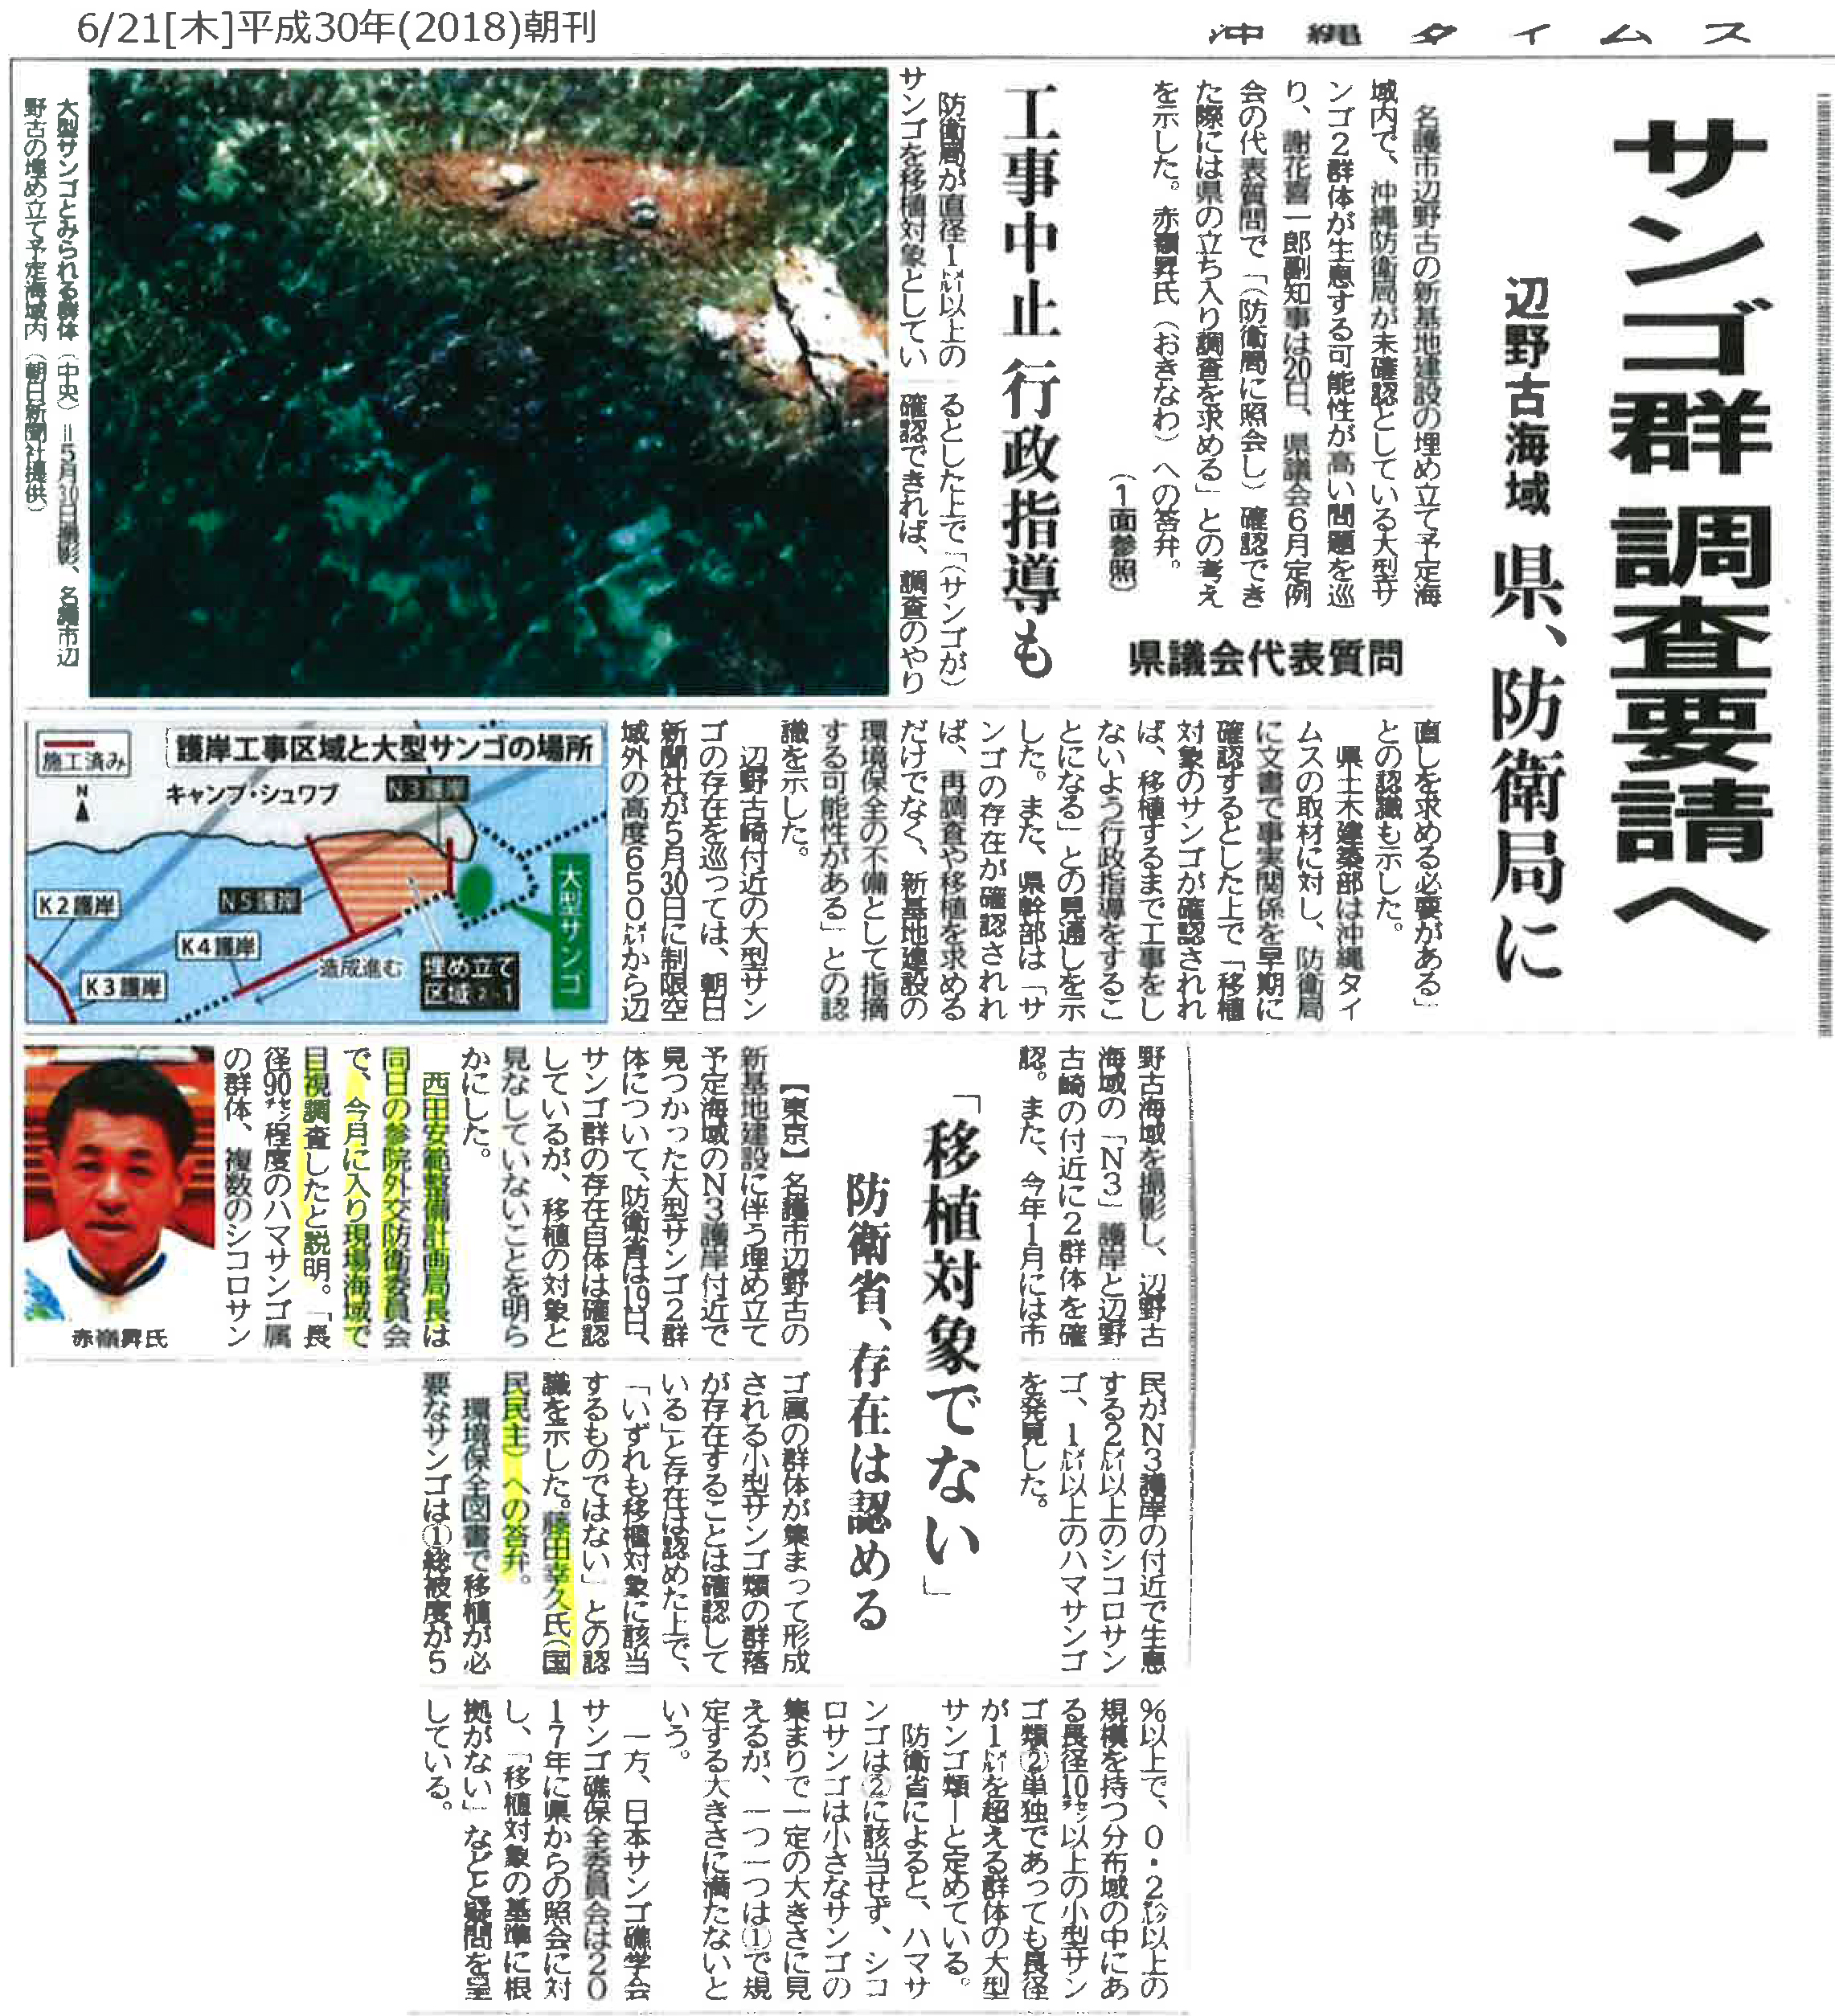 【沖縄タイムス】サンゴ群調査要請へ「移植対象でない」防衛省、存在は認める